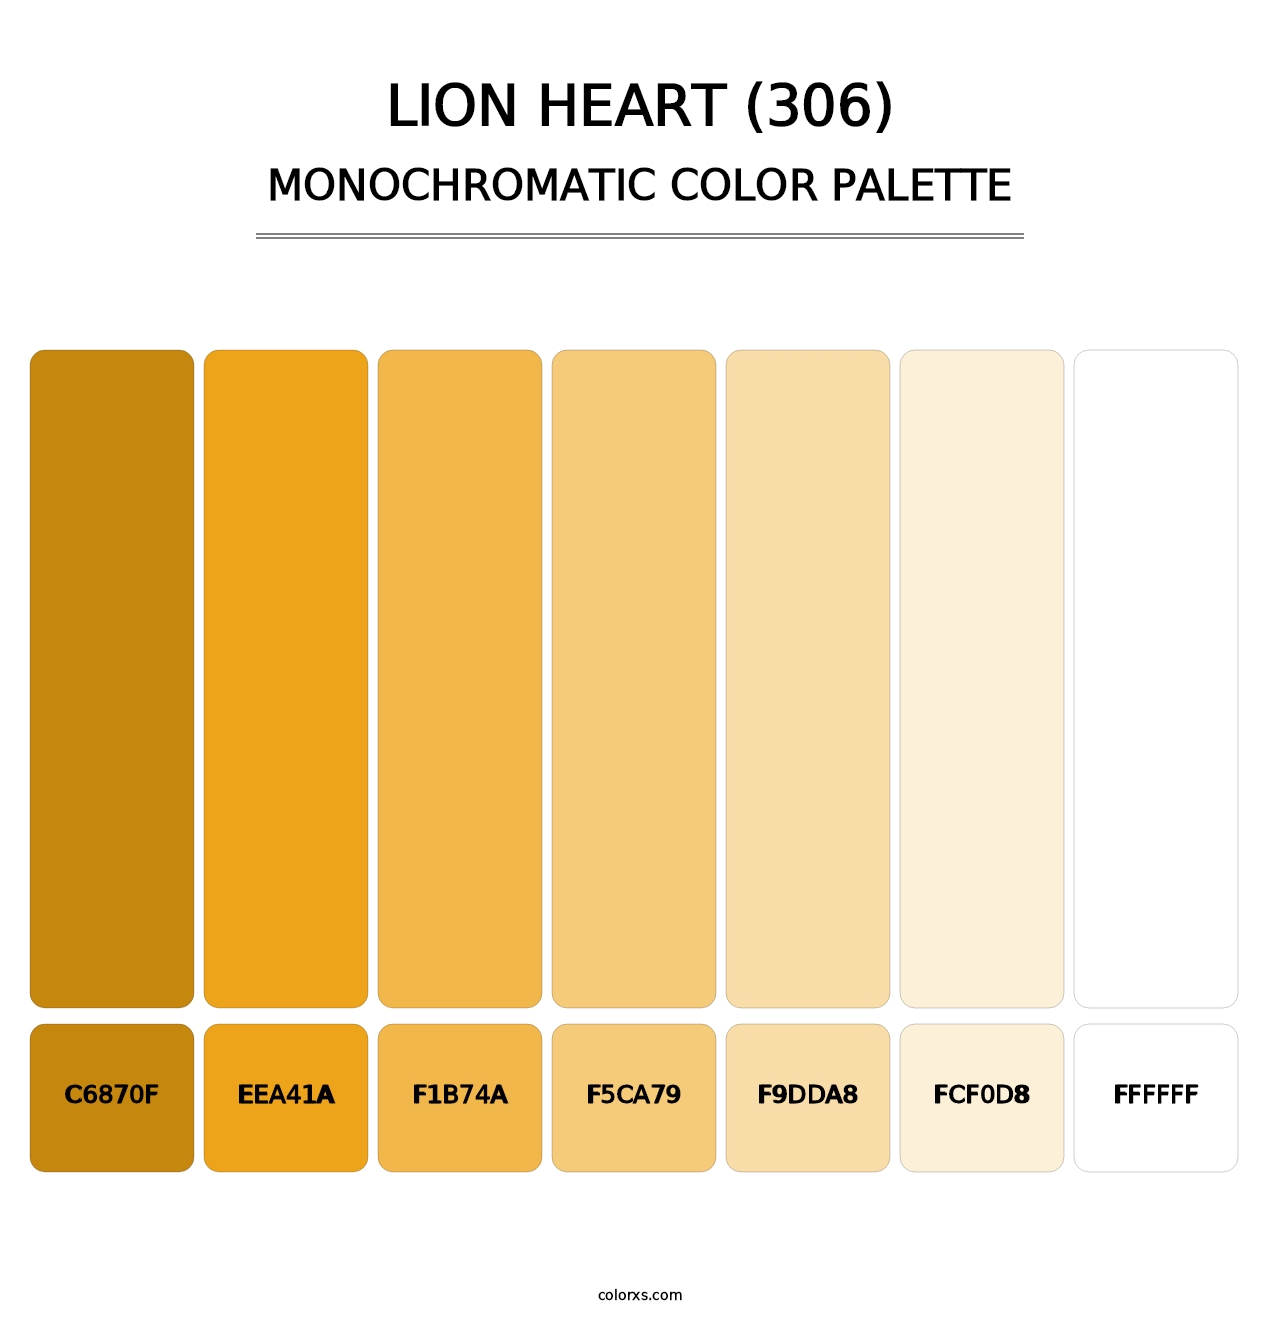 Lion Heart (306) - Monochromatic Color Palette